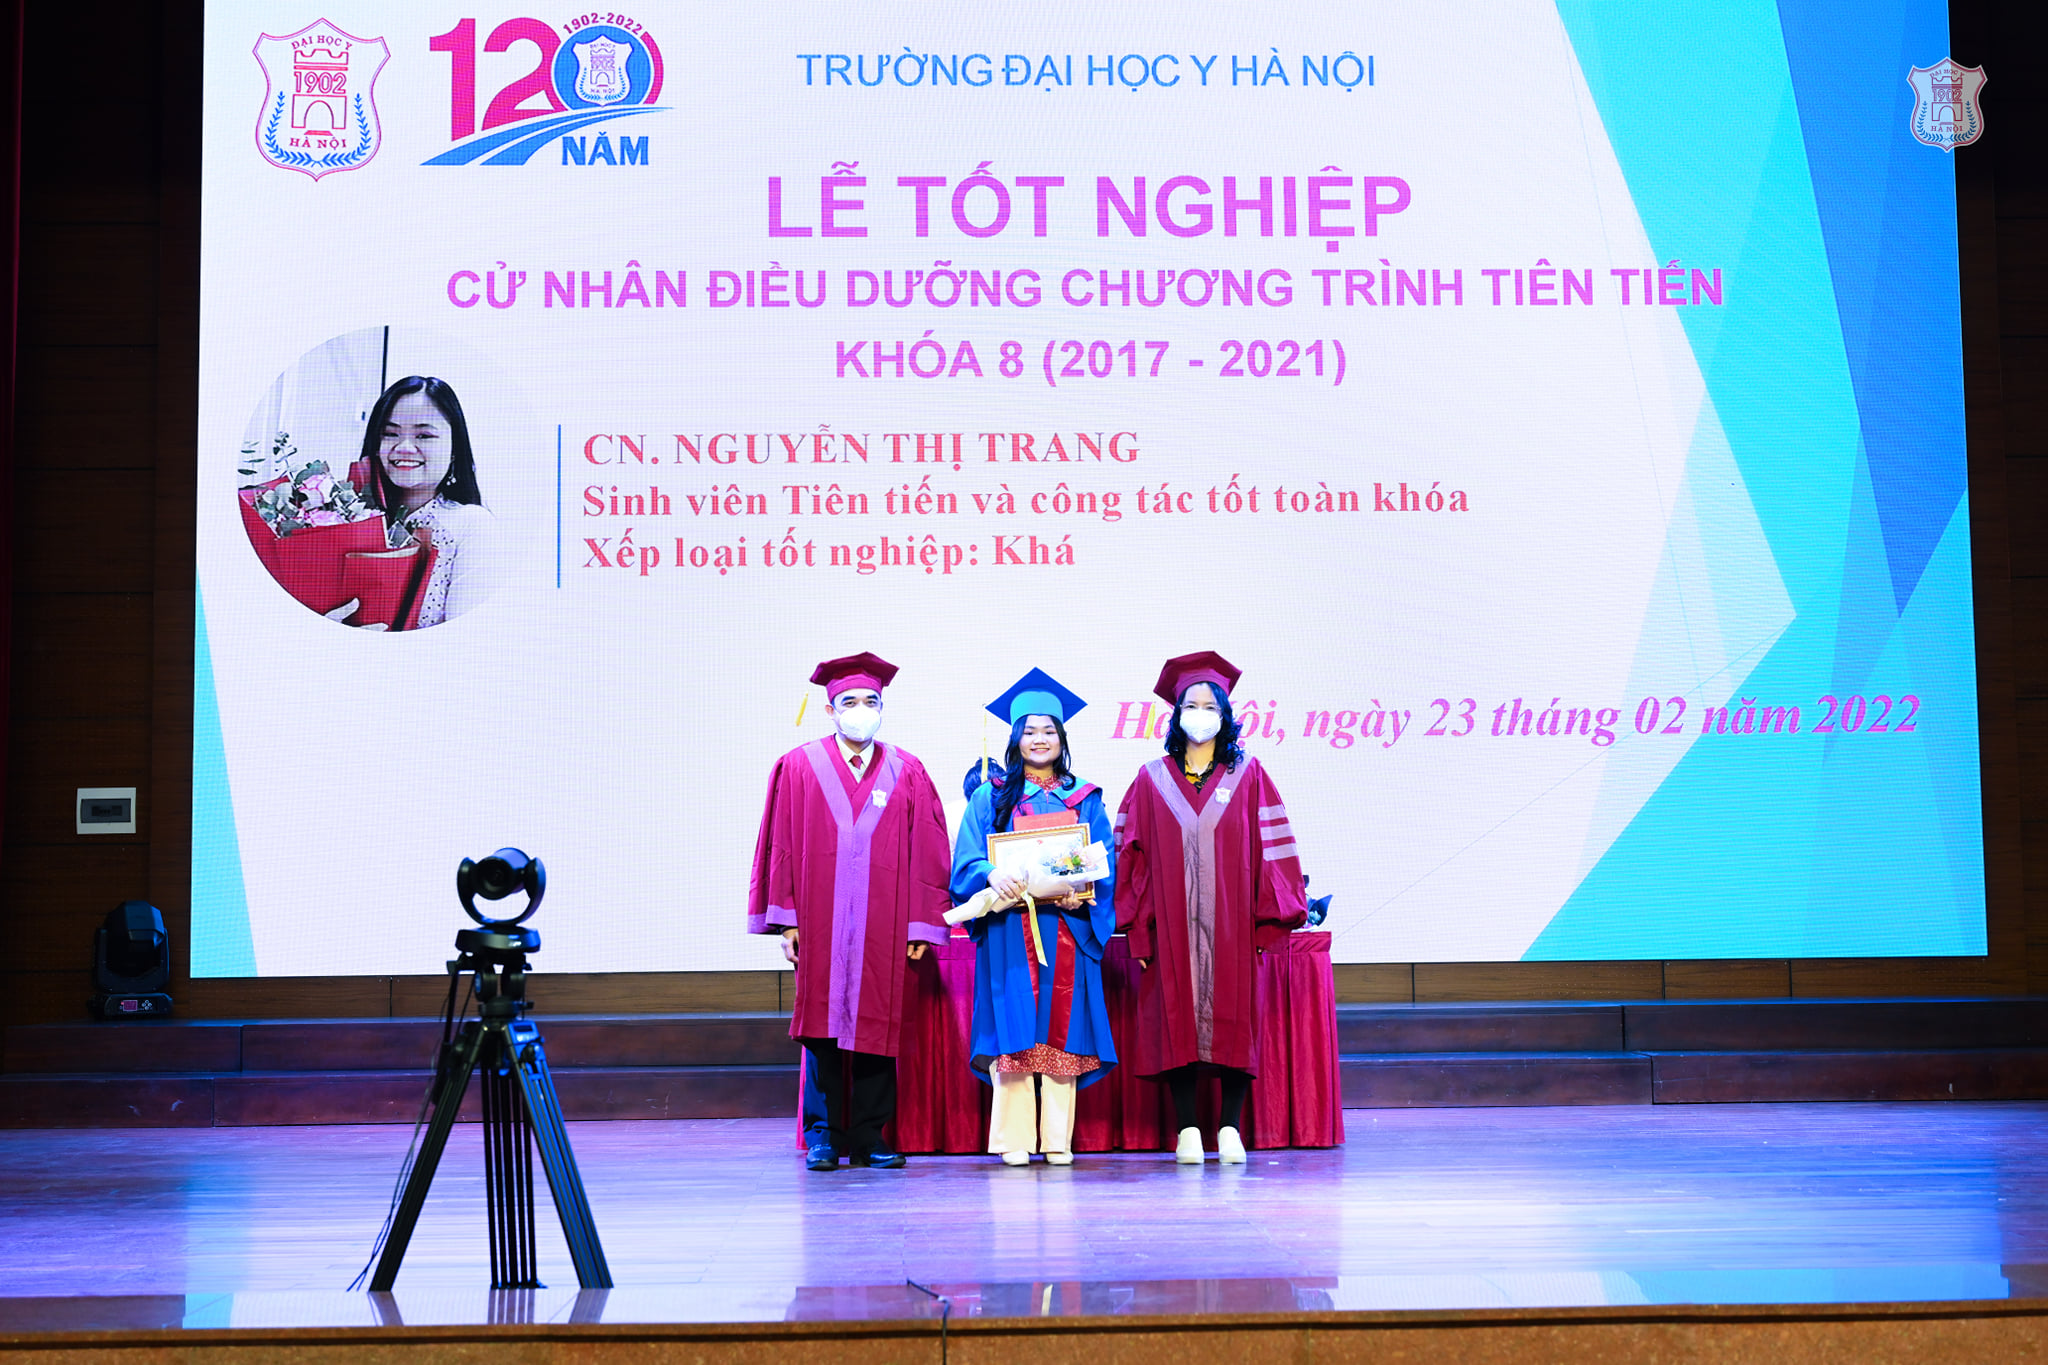 Dở khóc dở cười khoảnh khắc nữ sinh nhận bằng tốt nghiệp online, CĐM: 'Thật trân luôn' - ảnh 2